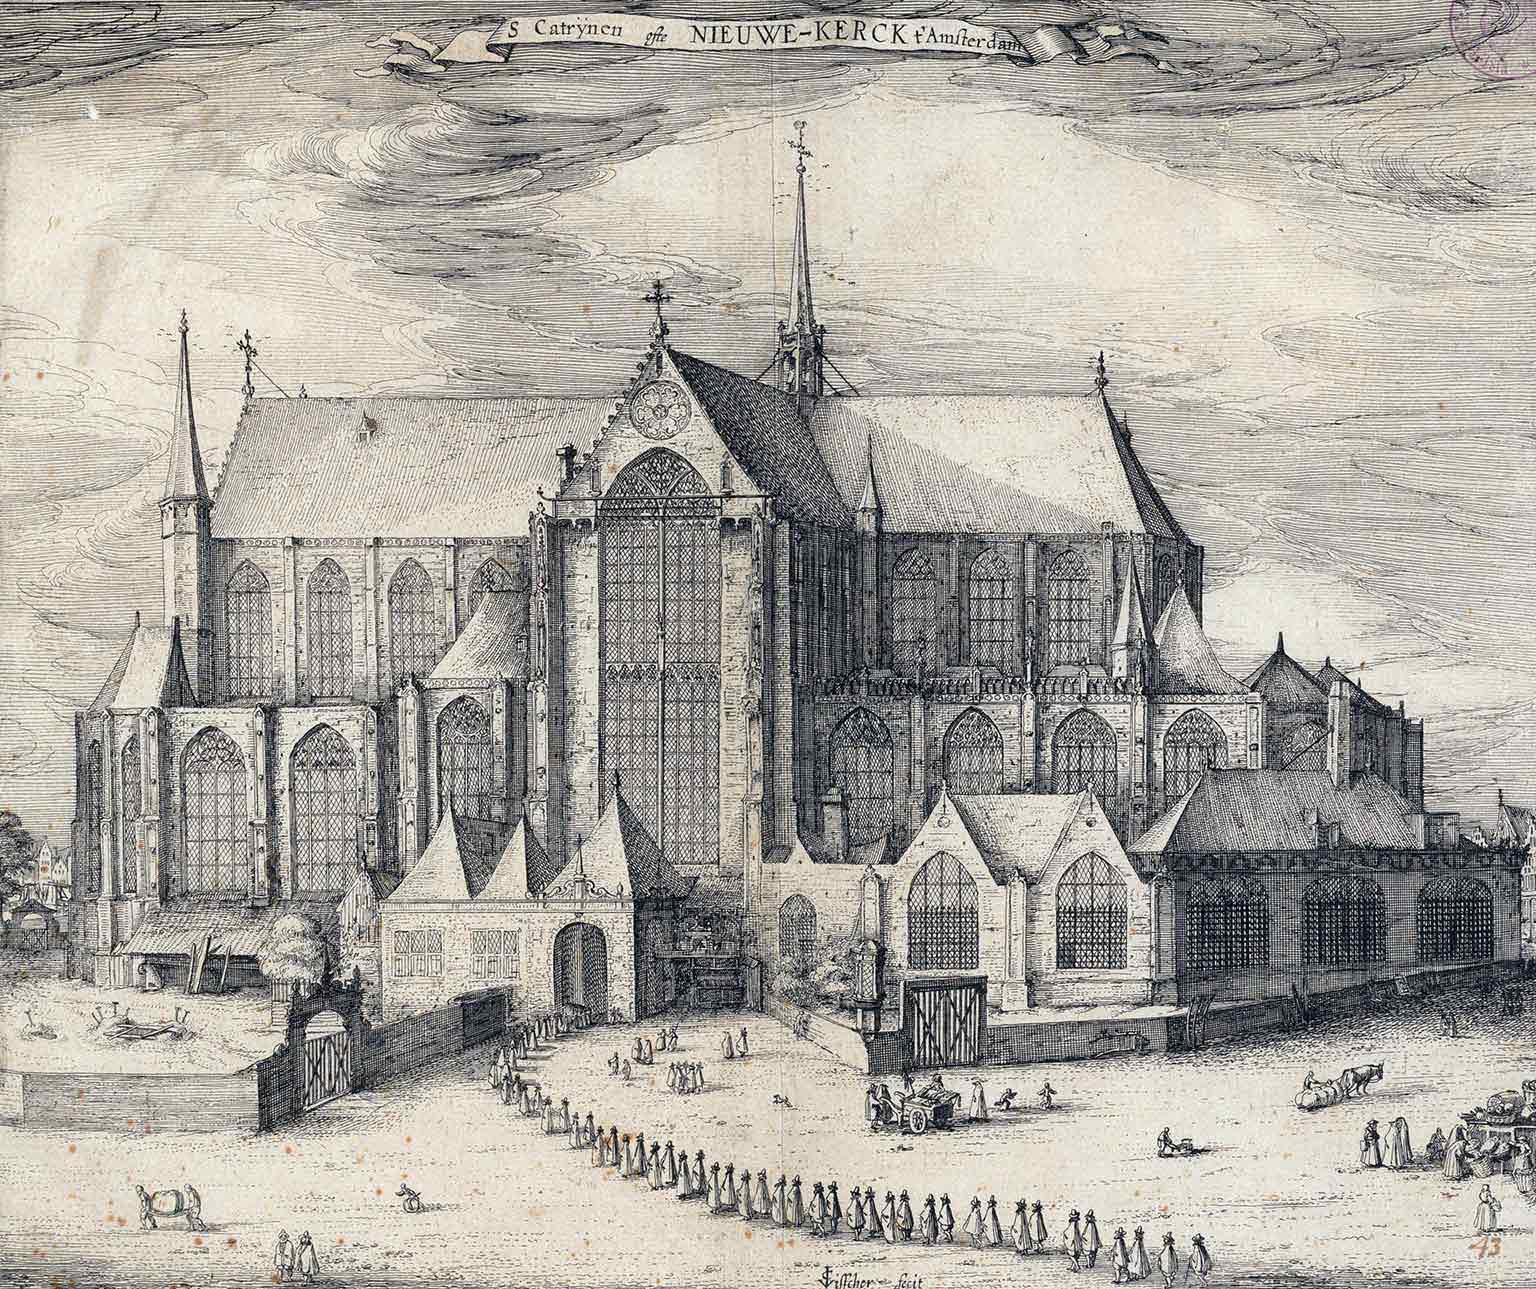 Nieuwe Kerk, Amsterdam, vanaf de Dam gezien in 1613, tekening van Claes Jansz Visscher